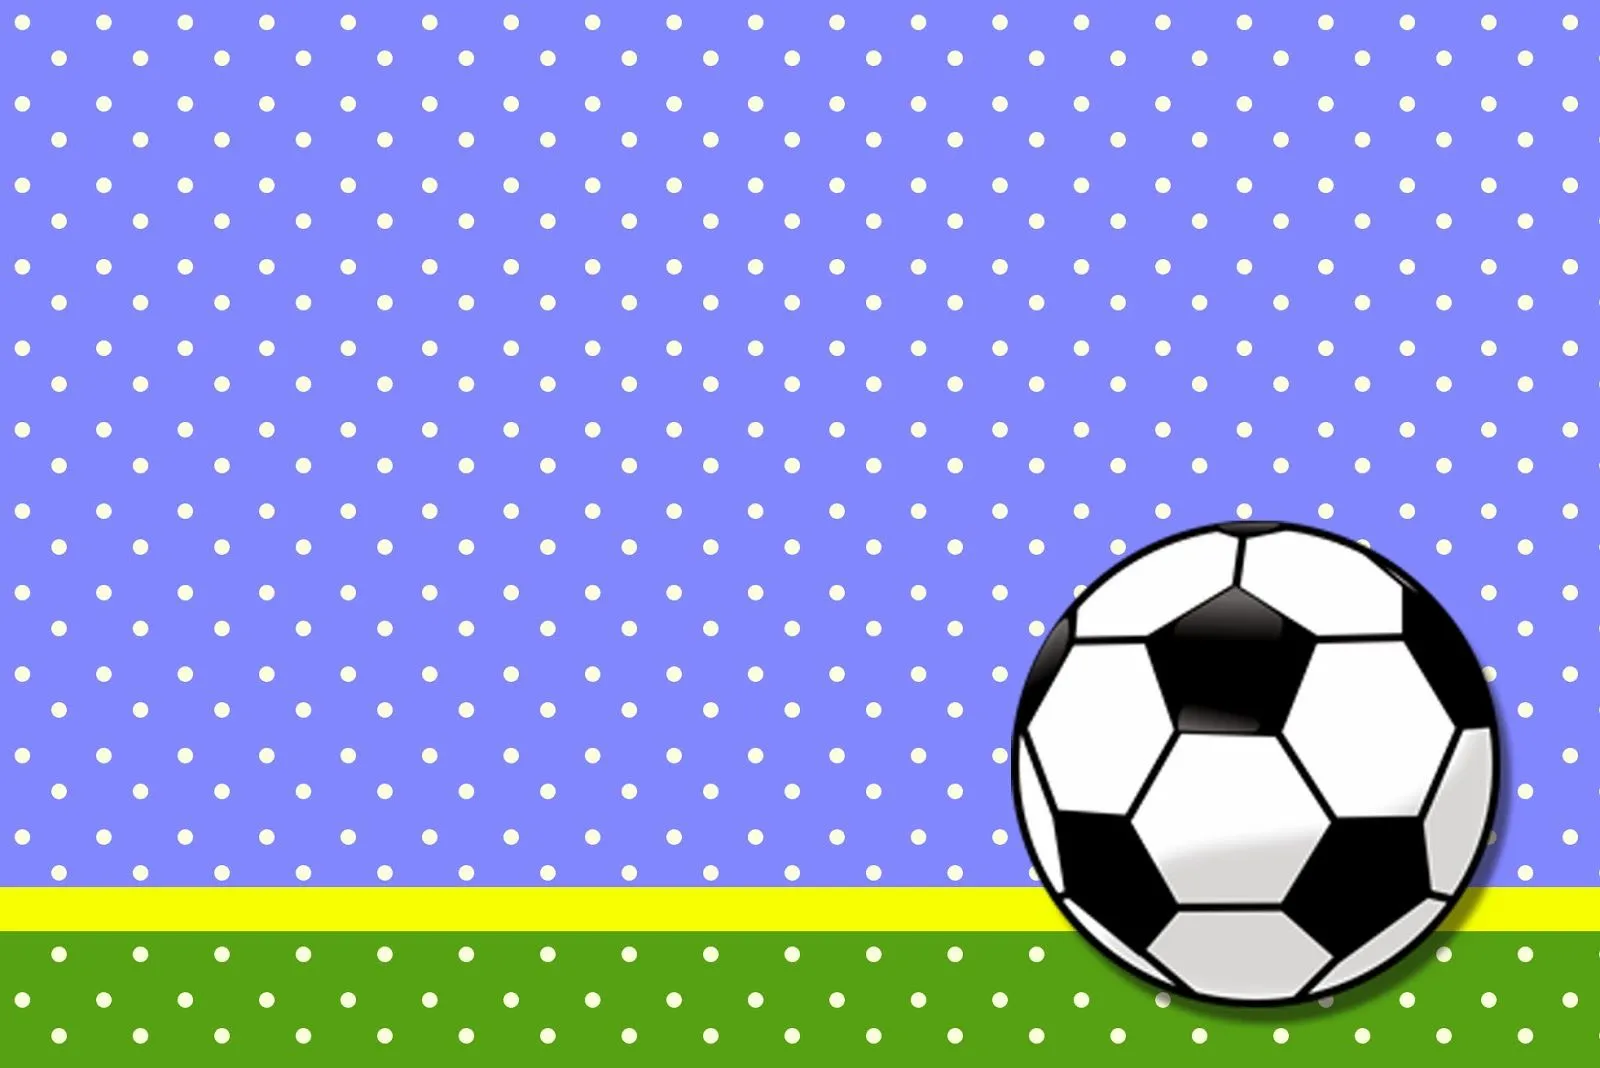 Fútbol: Tarjetas o Invitaciones para Imprimir Gratis. | Ideas y ...